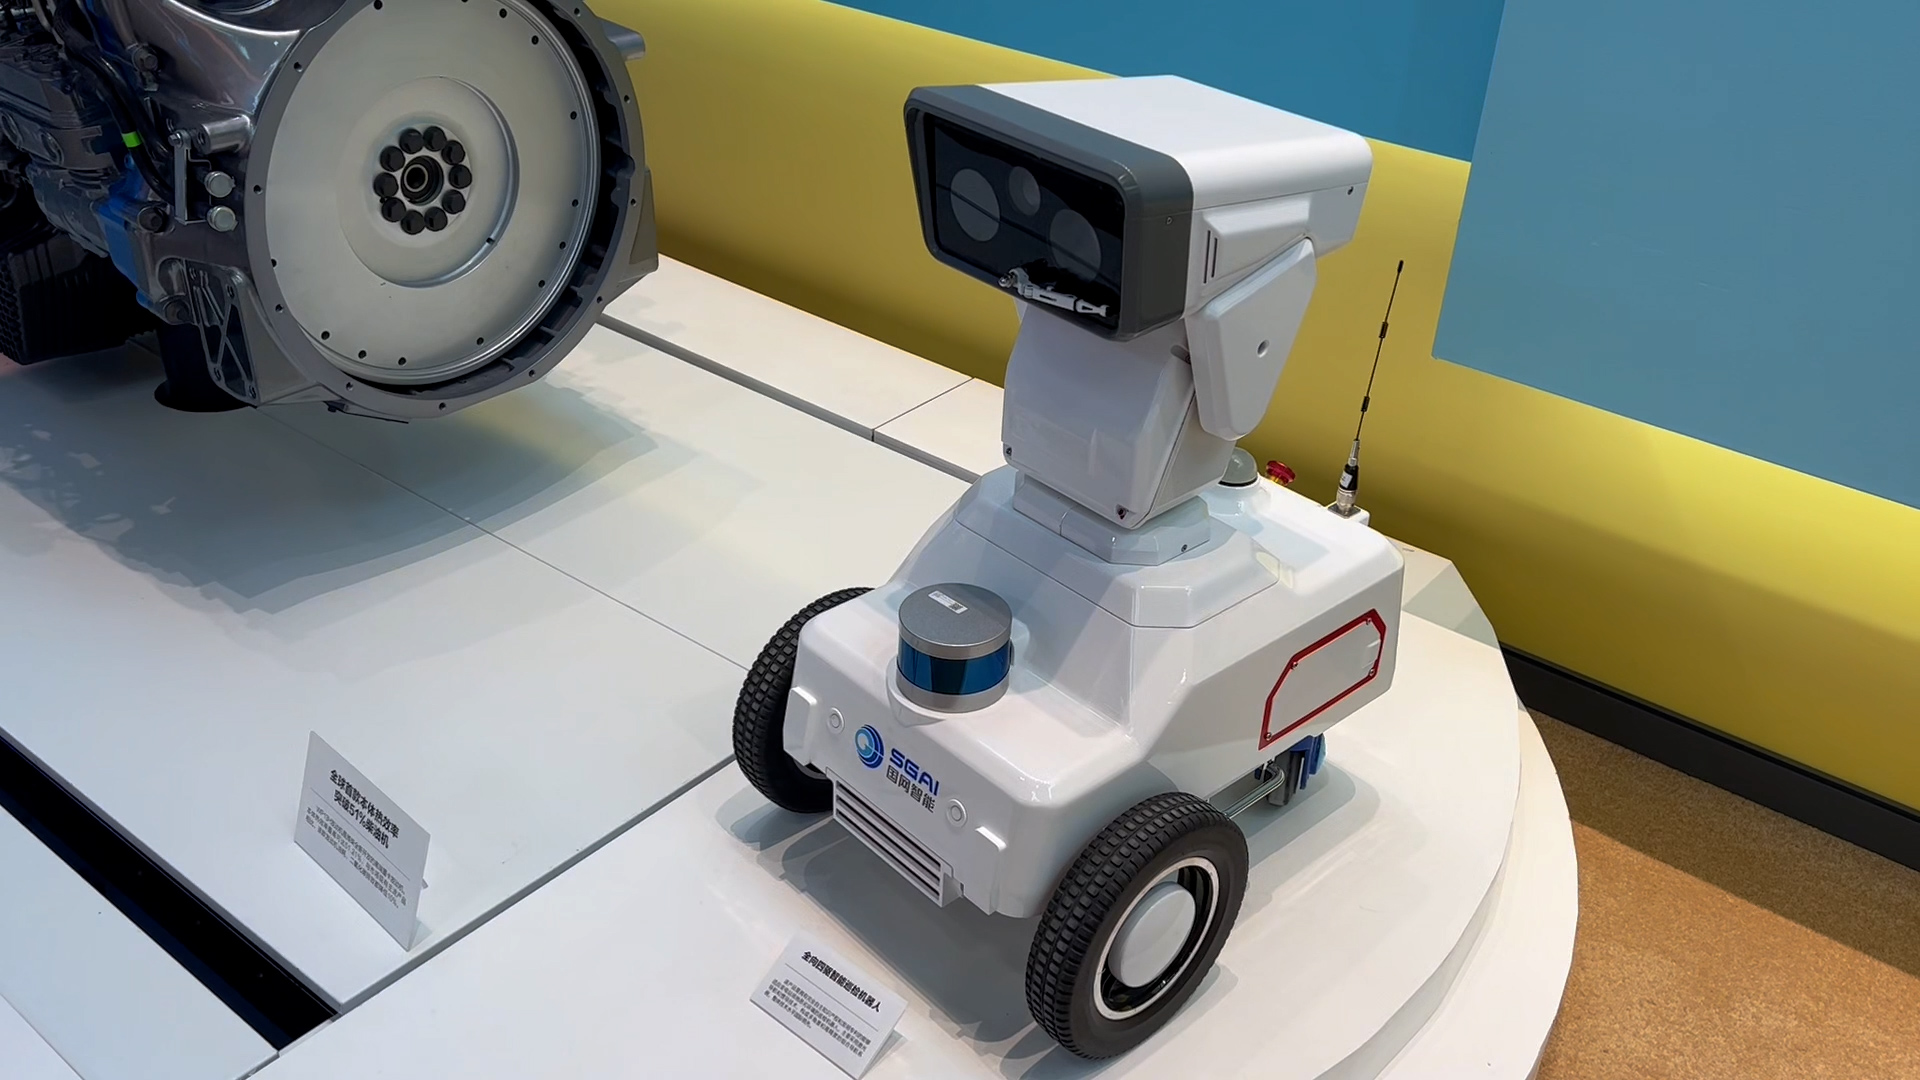 智能巡检机器人等科技产品亮相 这场展览让人们见识了山东的科技实力